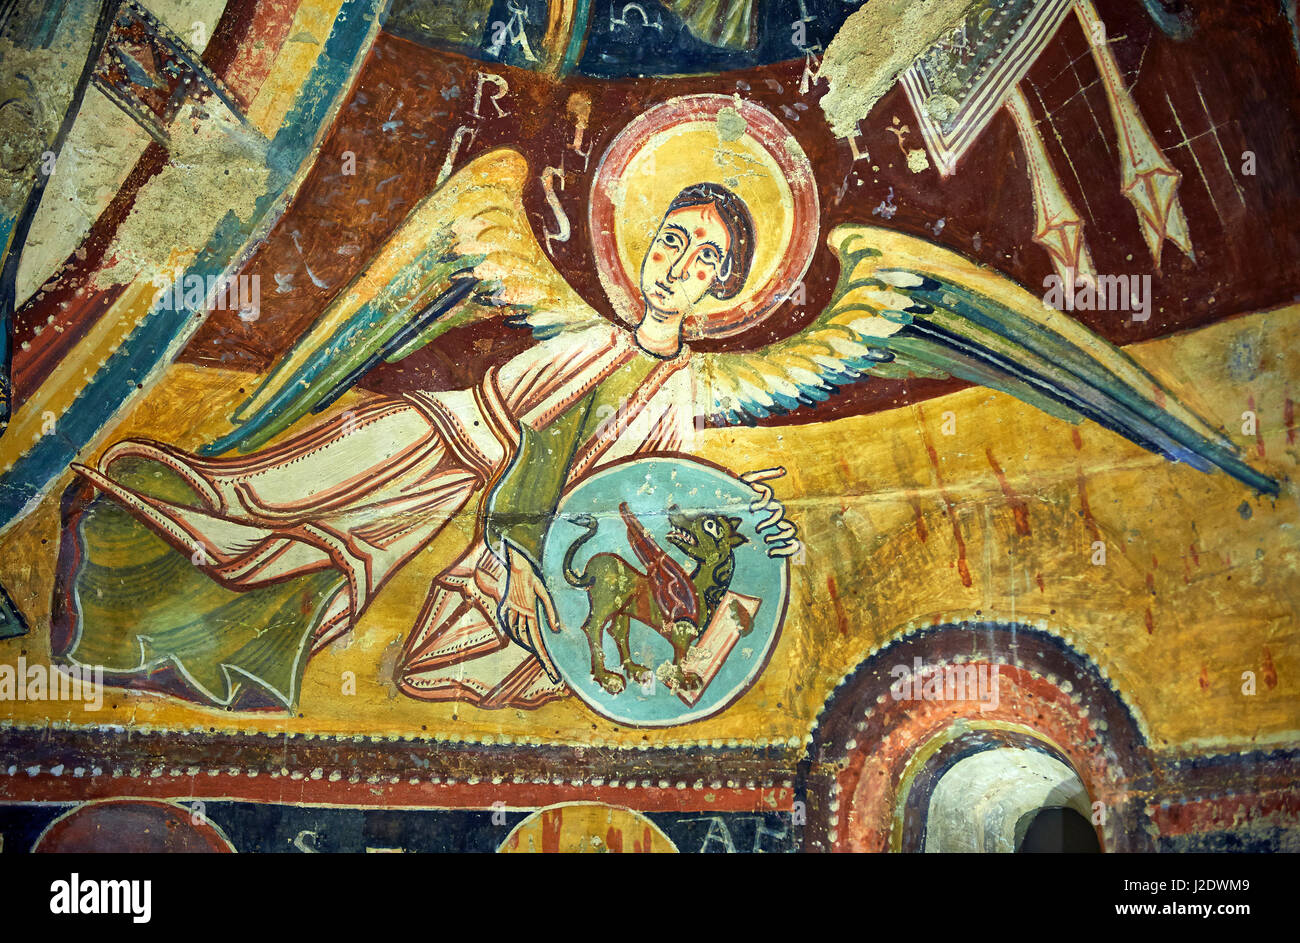 Romanische Fresken aus der Kirche von Sant Miguel d'Engolasters, Les Escaldes Andorra... Malte etwa 1160. Nationalen Kunstmuseum von Katalonien, Barc Stockfoto